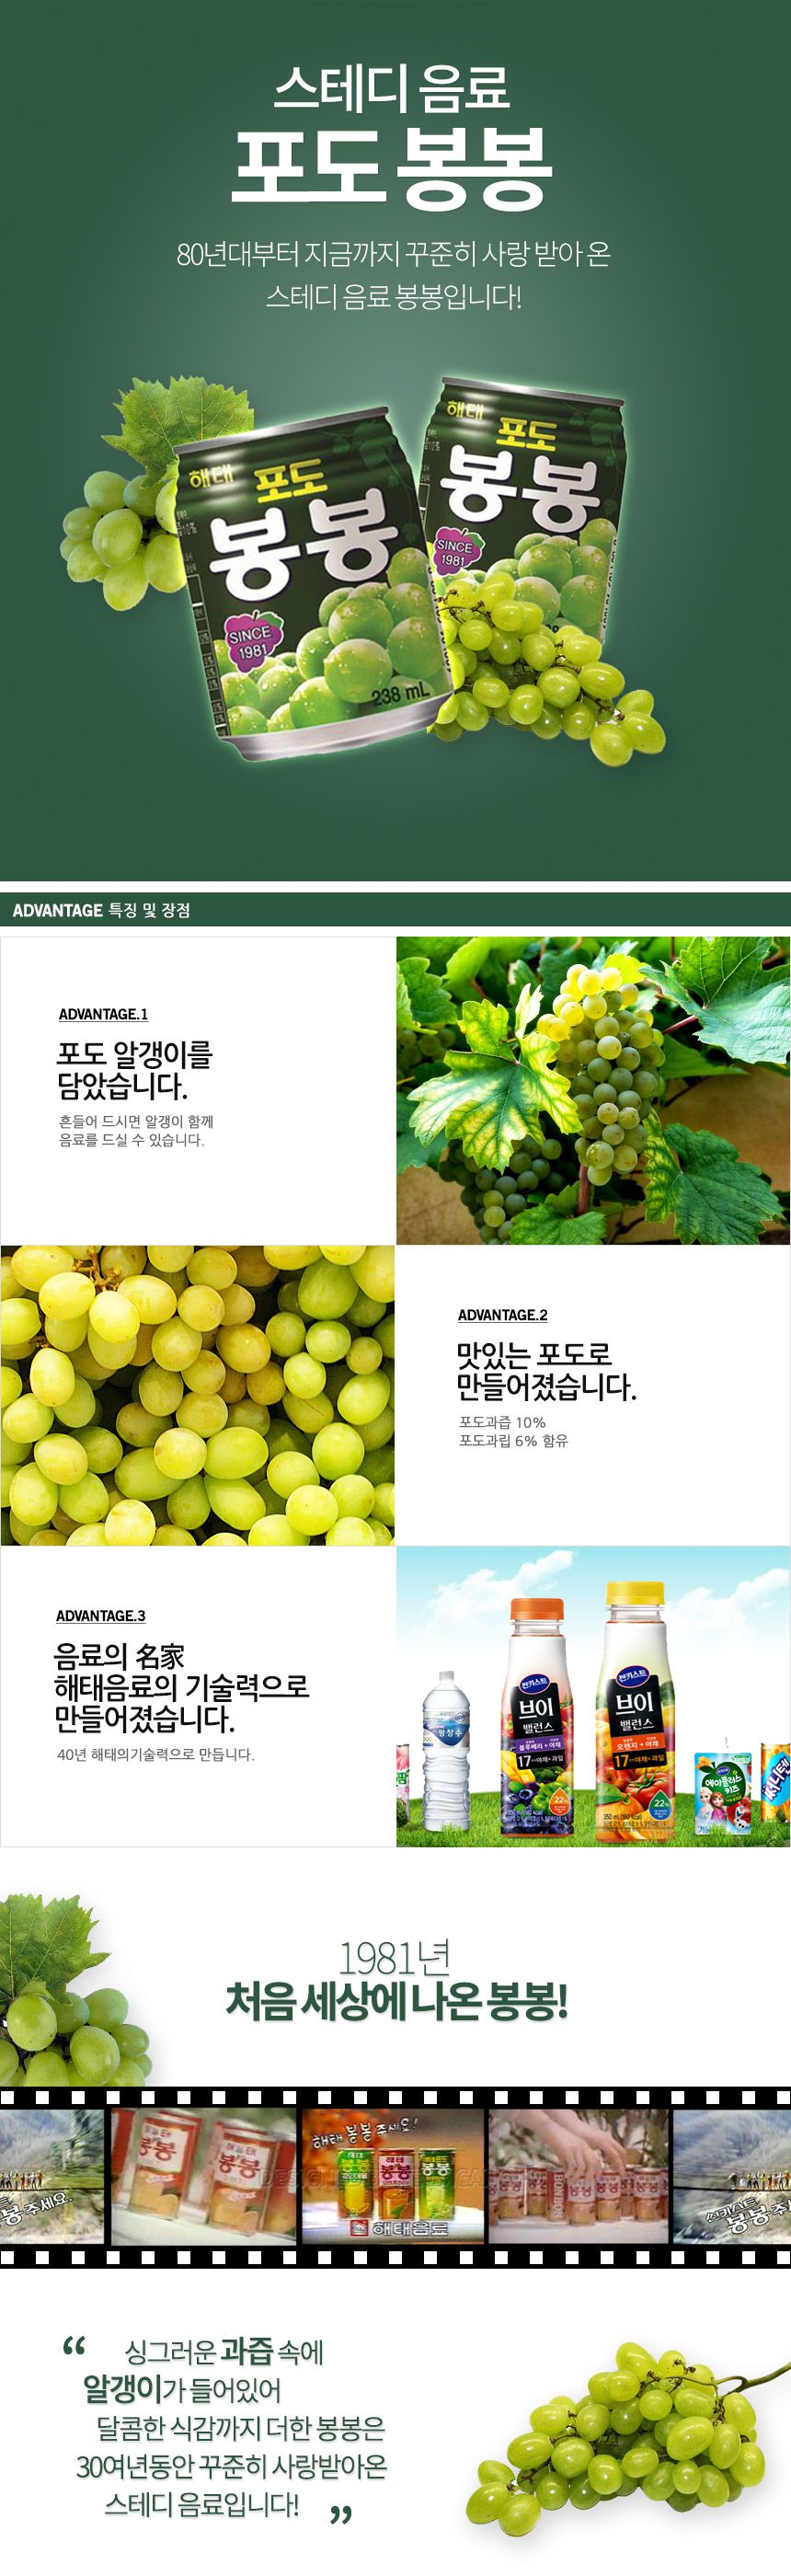 韓國食品-[해태] 포도봉봉 238ml